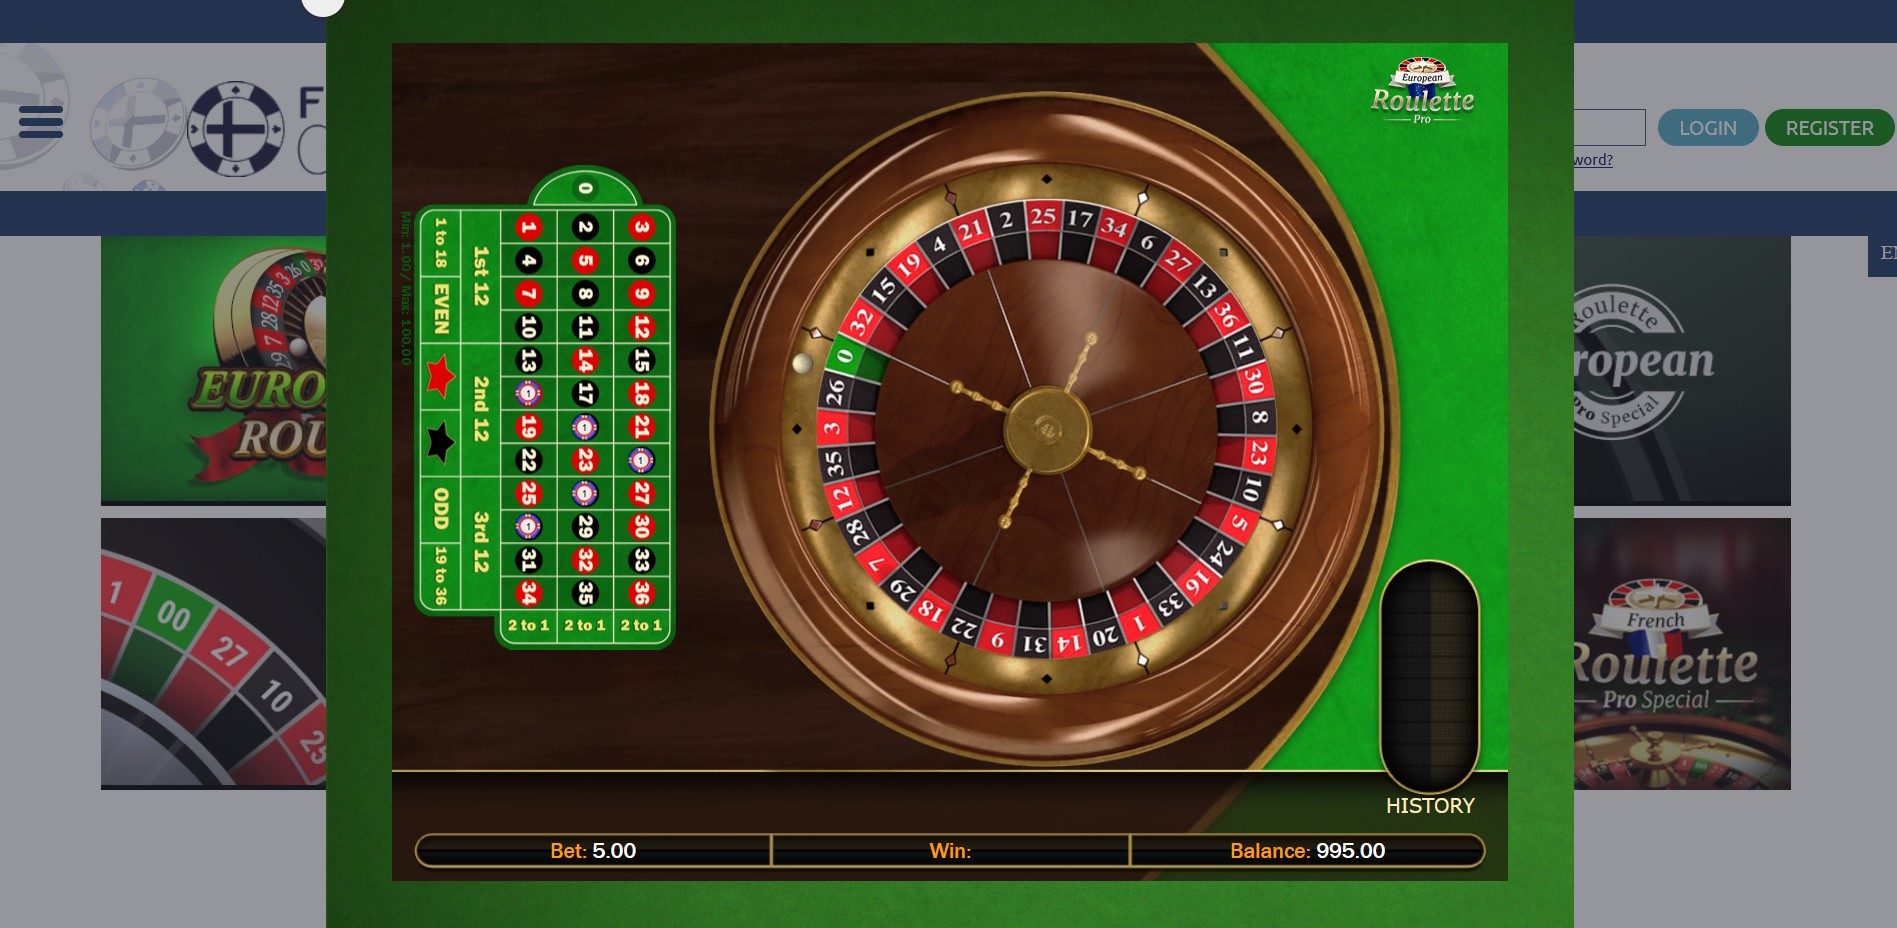 Finlandia Casino Casino Games